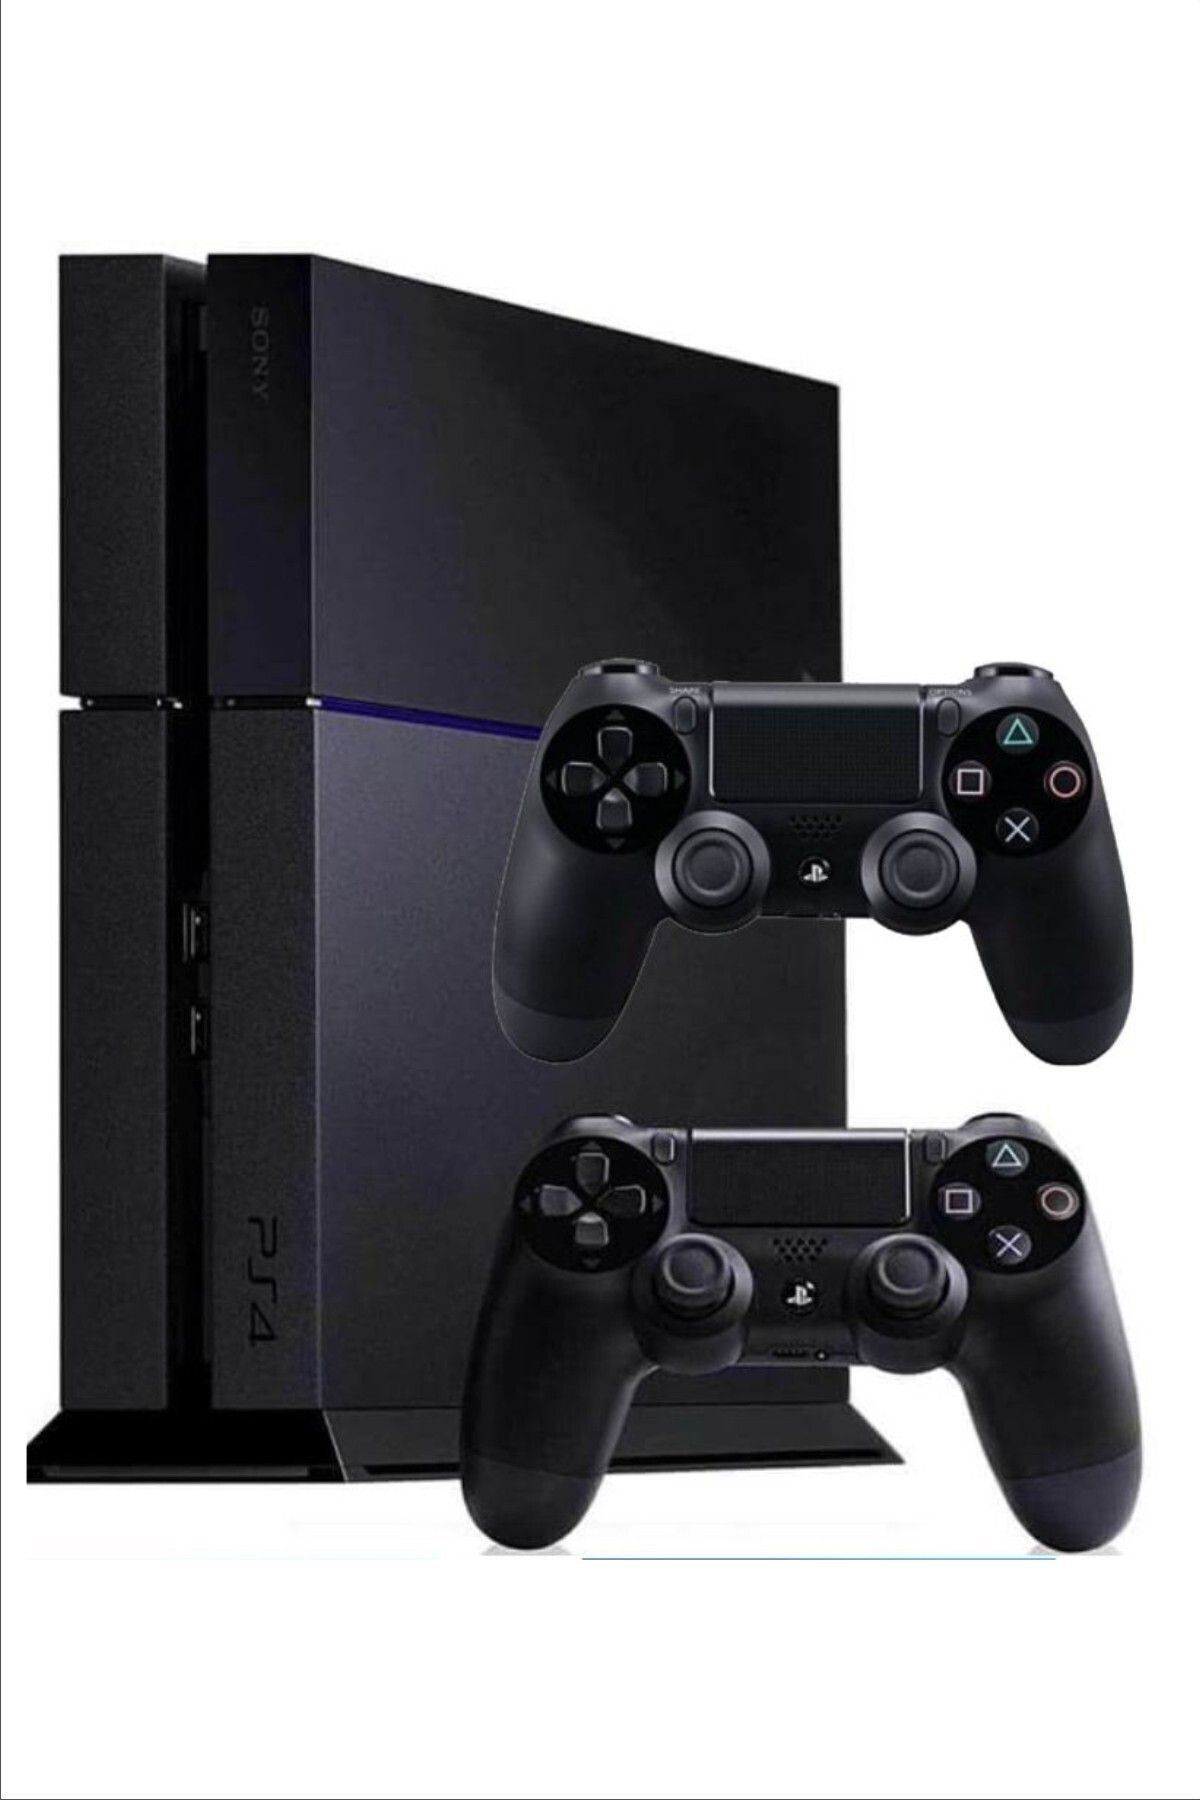 Ps Sony Playstation 4 Mat Yada Parlak Kasa 500 Gb Yenilenmiş Üründür 2 Kol